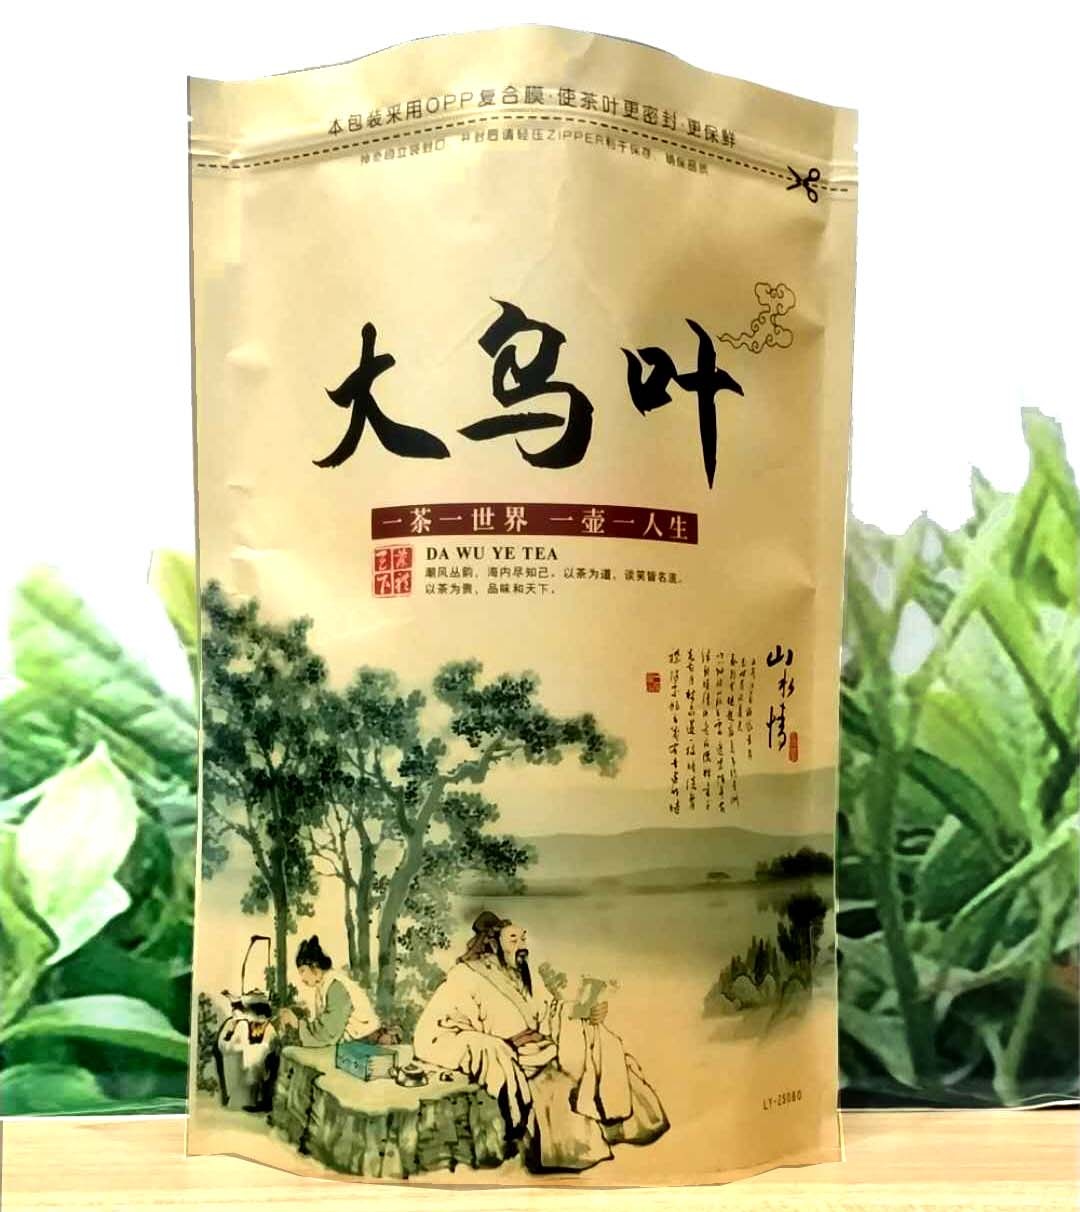 大乌叶茶 大乌叶茶报价 大乌叶茶种植 大乌叶茶生产厂